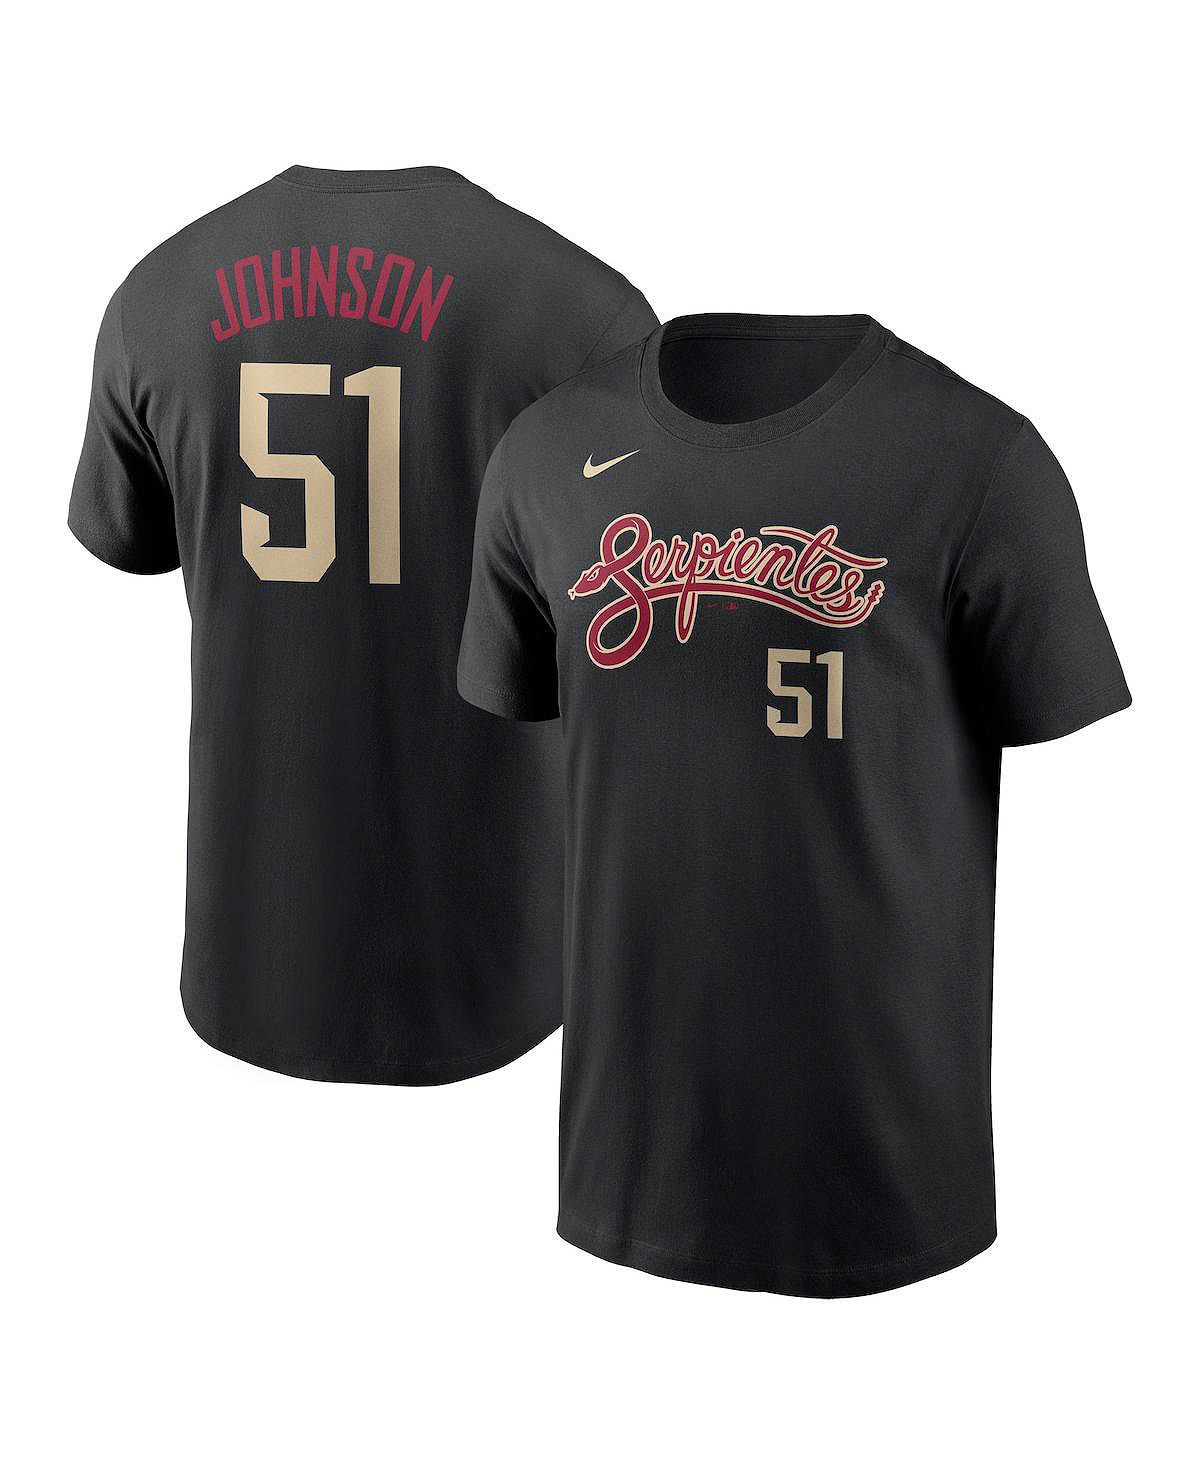 цена Мужская черная футболка Randy Johnson Arizona Diamondbacks City Connect с именем и номером Nike